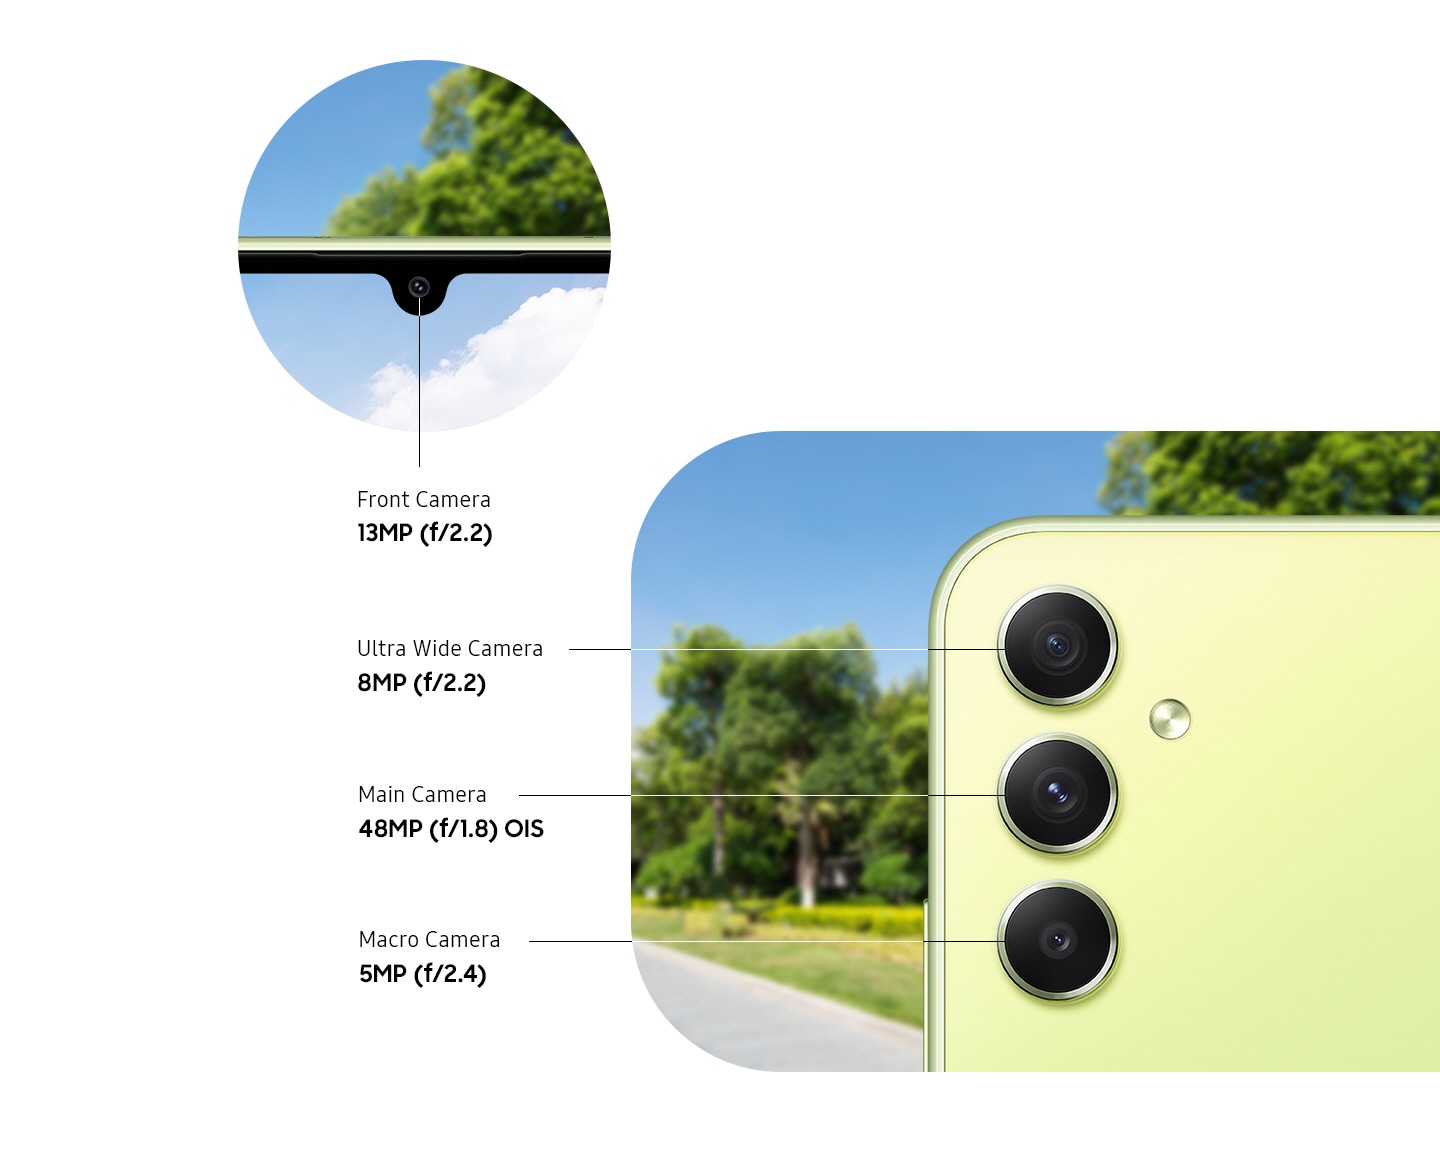 Prikazana sta sprednja in zadnja stran Galaxy A34 5G v svetlo zeleni barvi, vključno s sprednjo kamero 13 MP f2.2, ultra širokokotno kamero 8 MP f2.2, glavno kamero 48 MP f1.8 OIS in 5 MP f2.4 makro fotoaparat.  